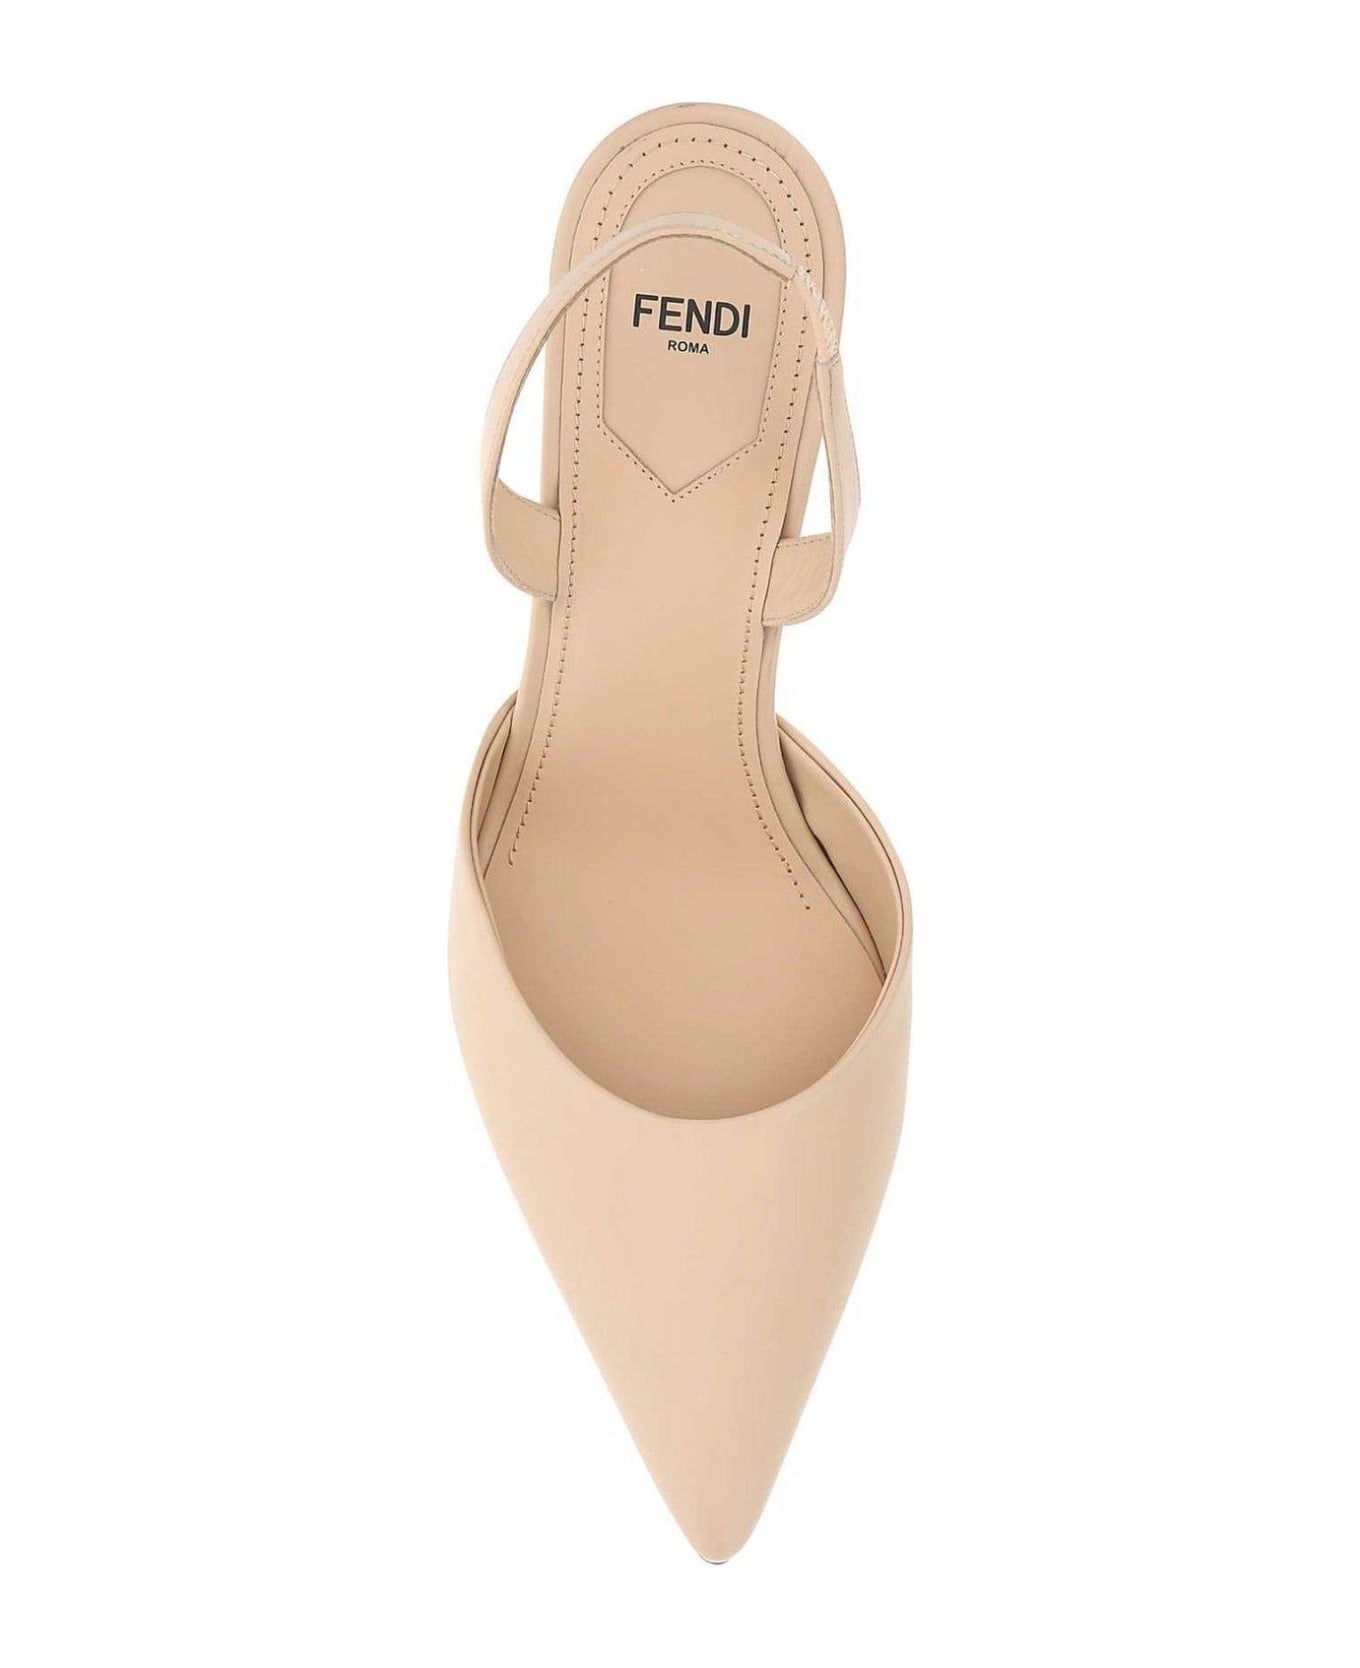 Fendi F-shaped Sculpted Heel Pumps - BEIGE ハイヒール